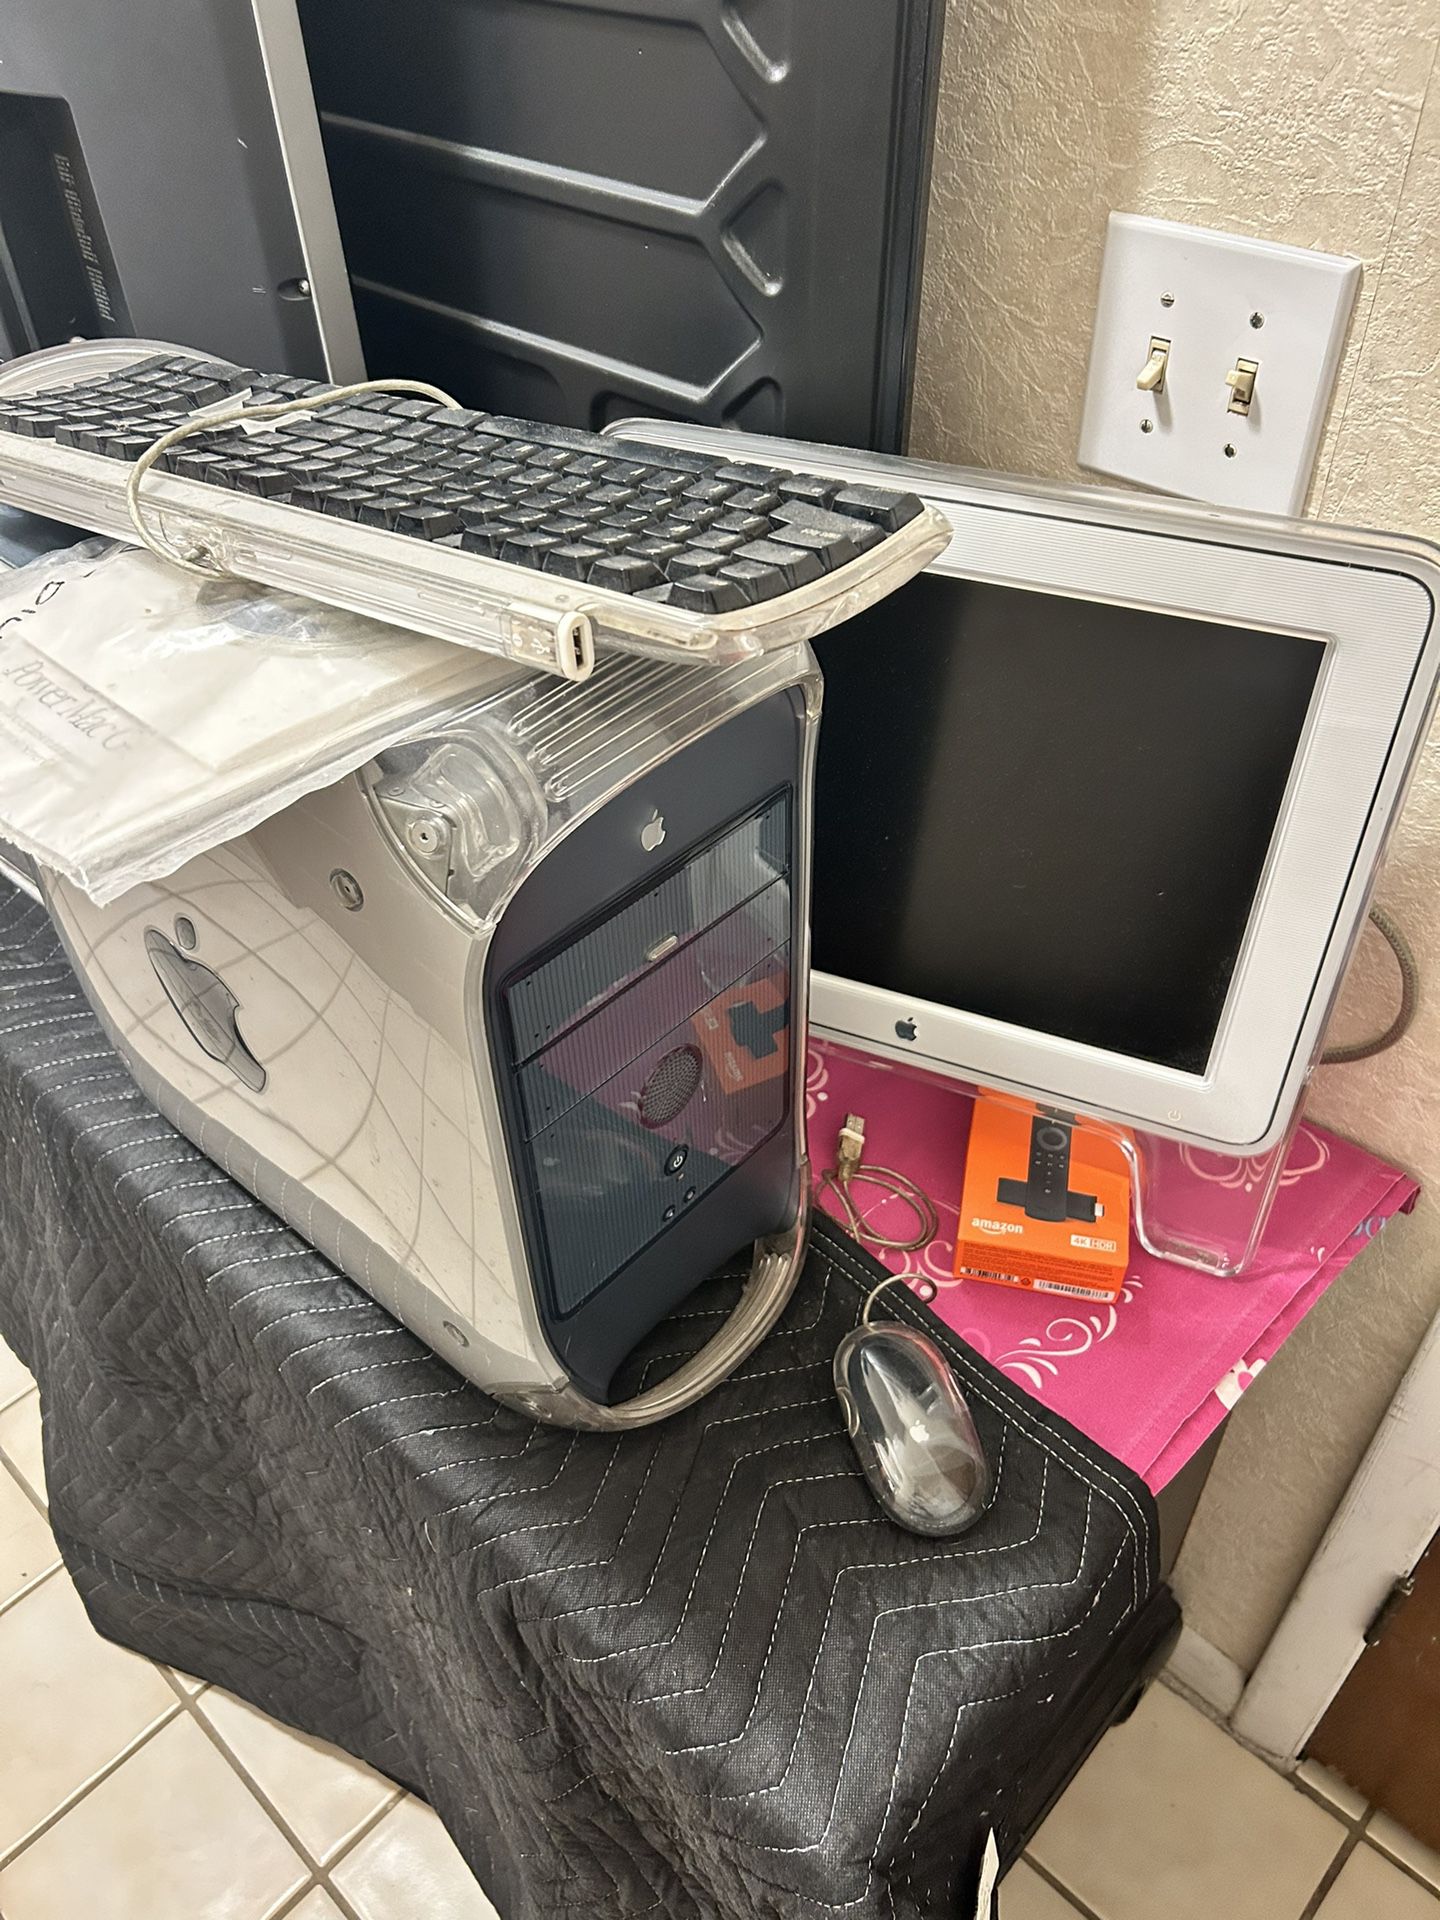 Computer / Power Mac G4 